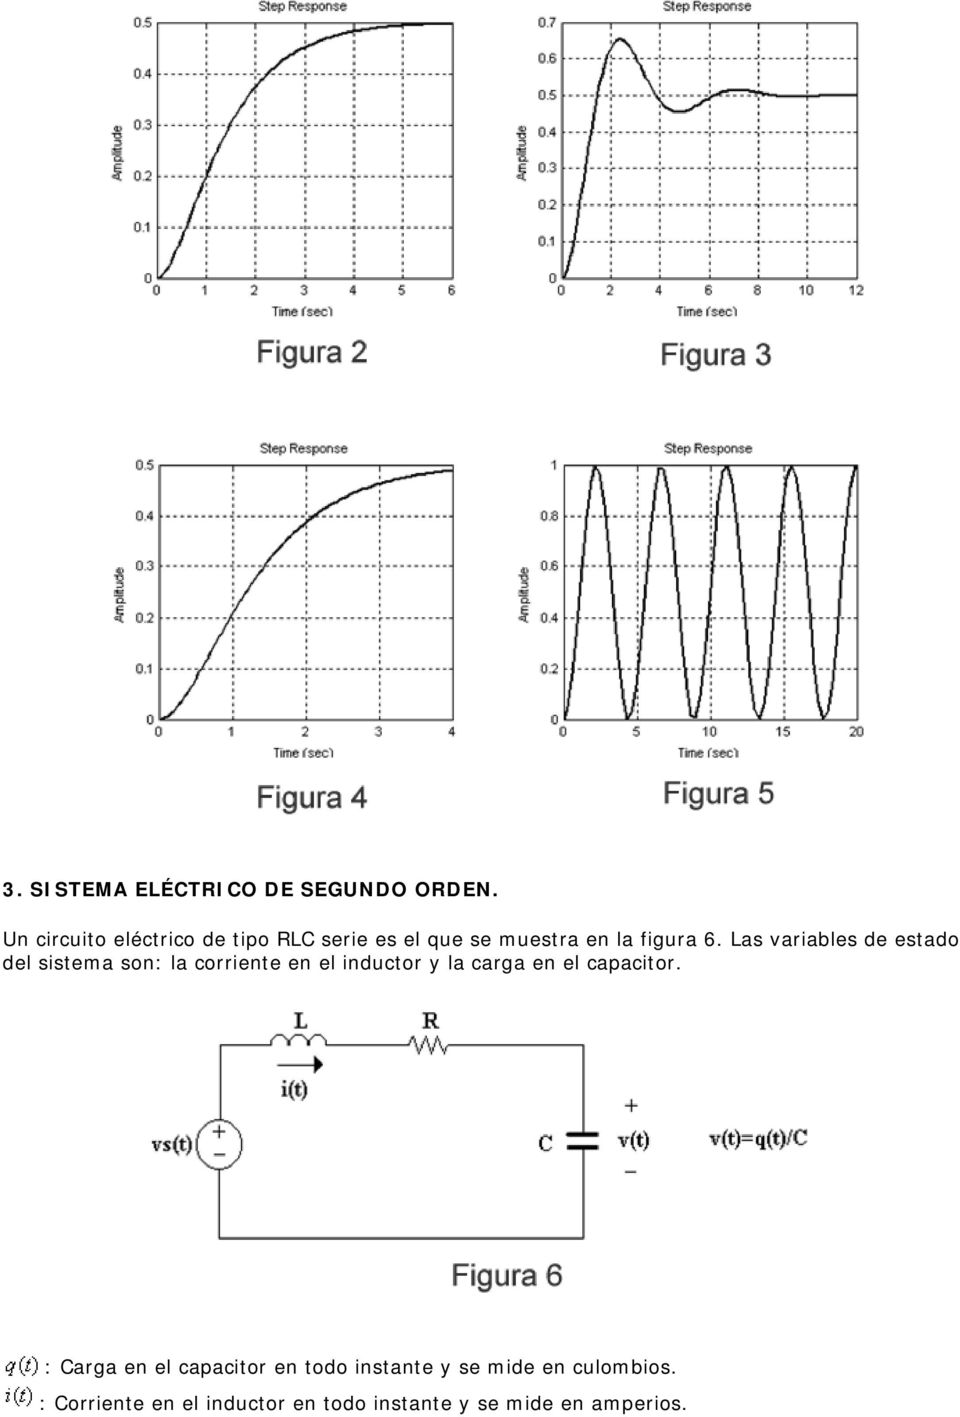 Las variables de estado del sistema son: la corriente en el inductor y la carga en el